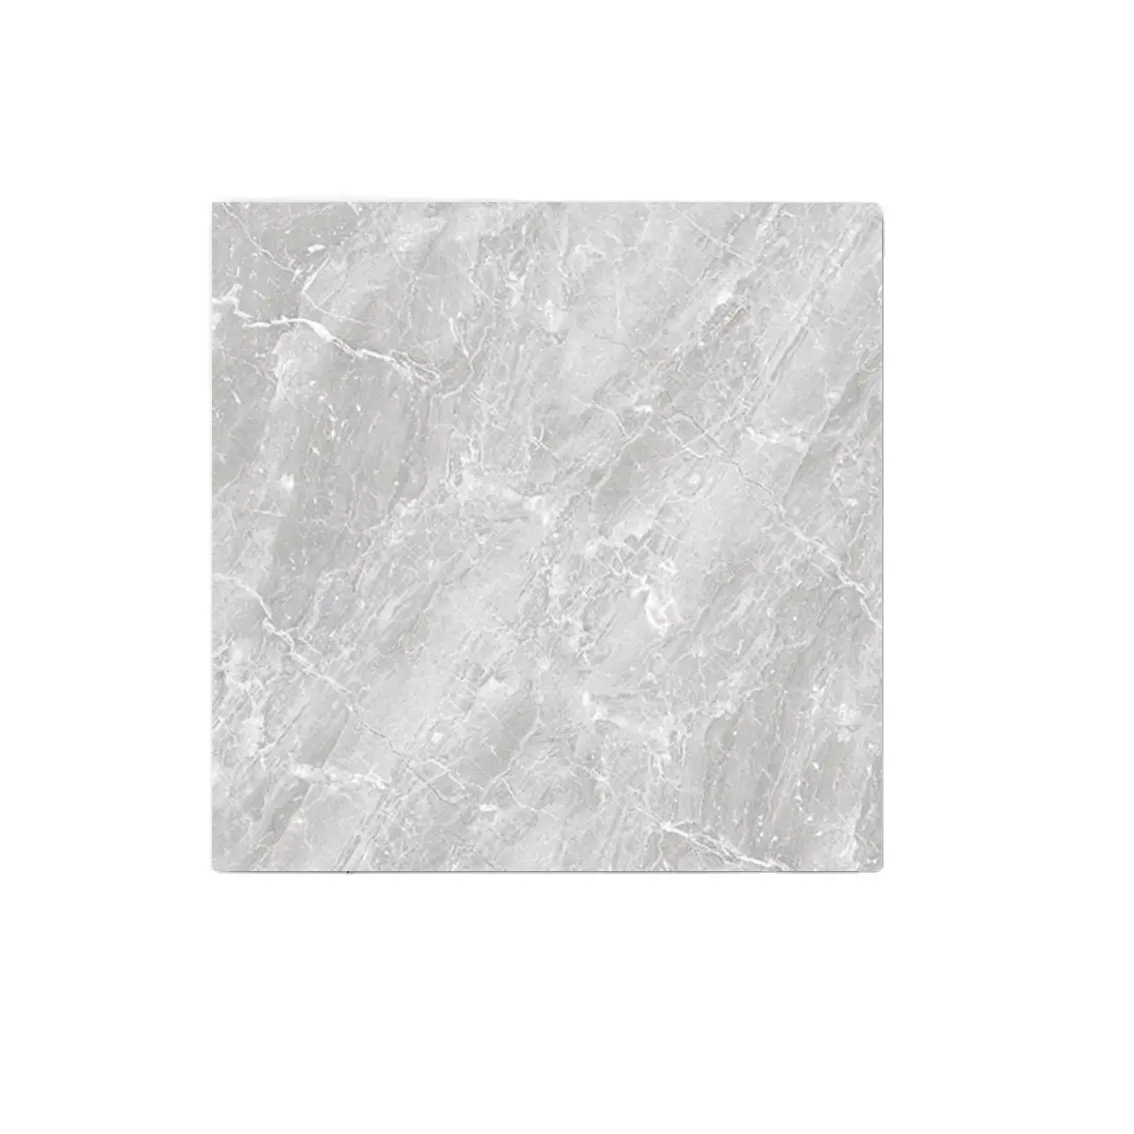 La scelta migliore 60x60 cm pietra di colore grigio sembra piastrelle per pavimenti in lastre smaltate lucidate in porcellana